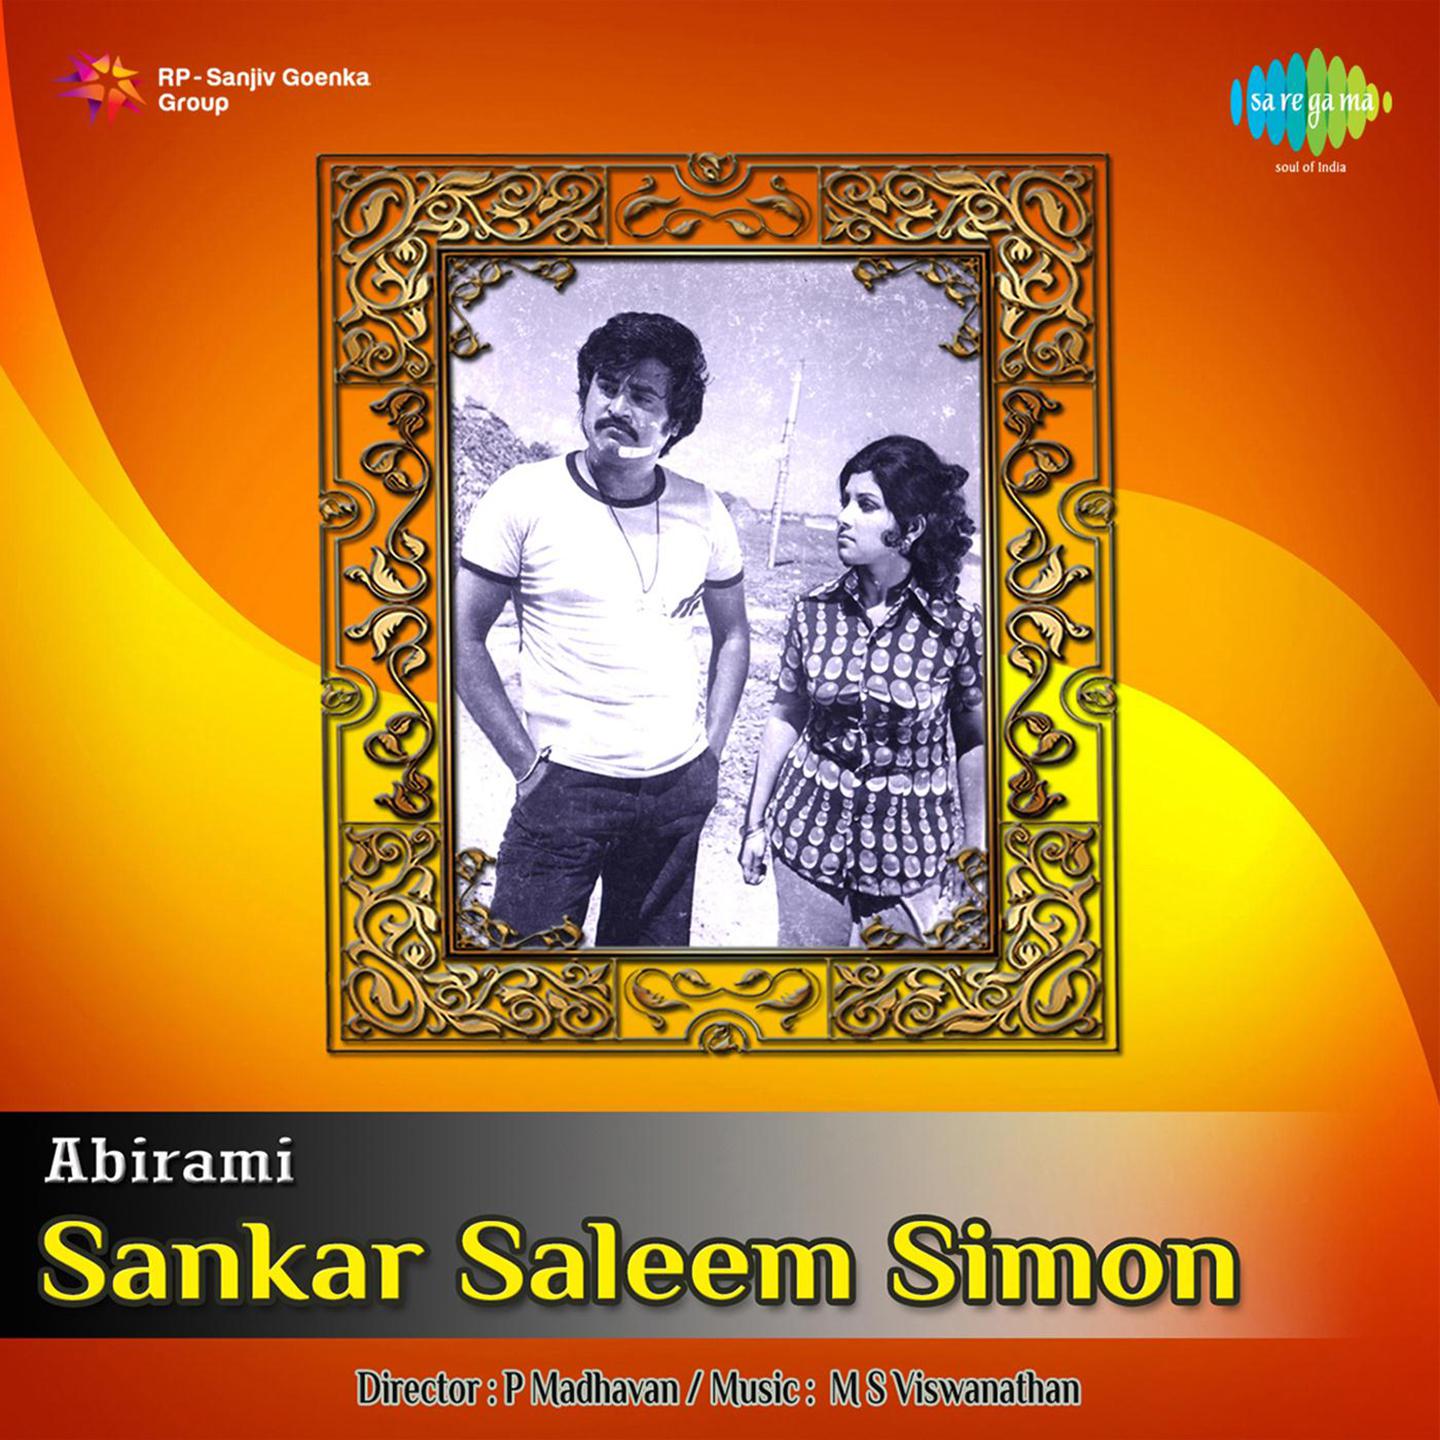 Sankar Saleem Simon